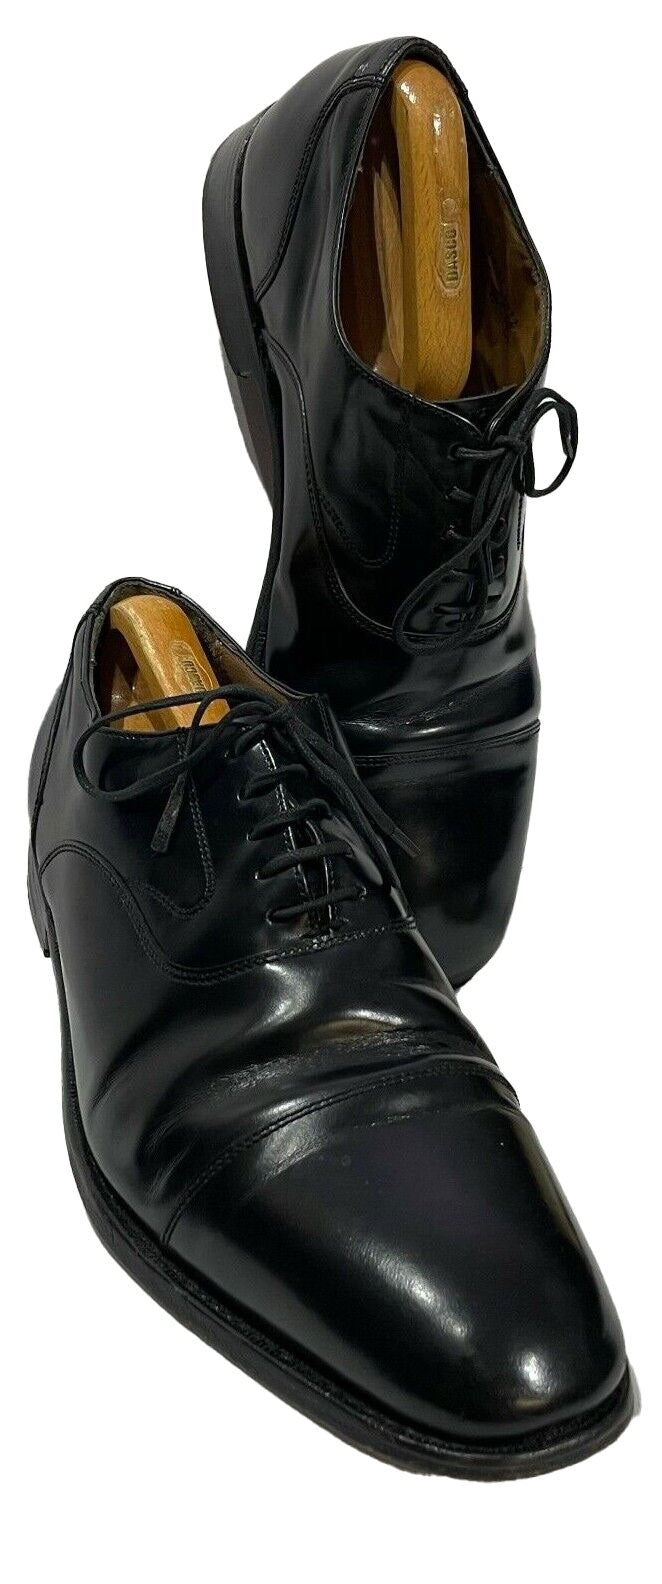 Black Oxford Lace Up Shoe - Ex Hire